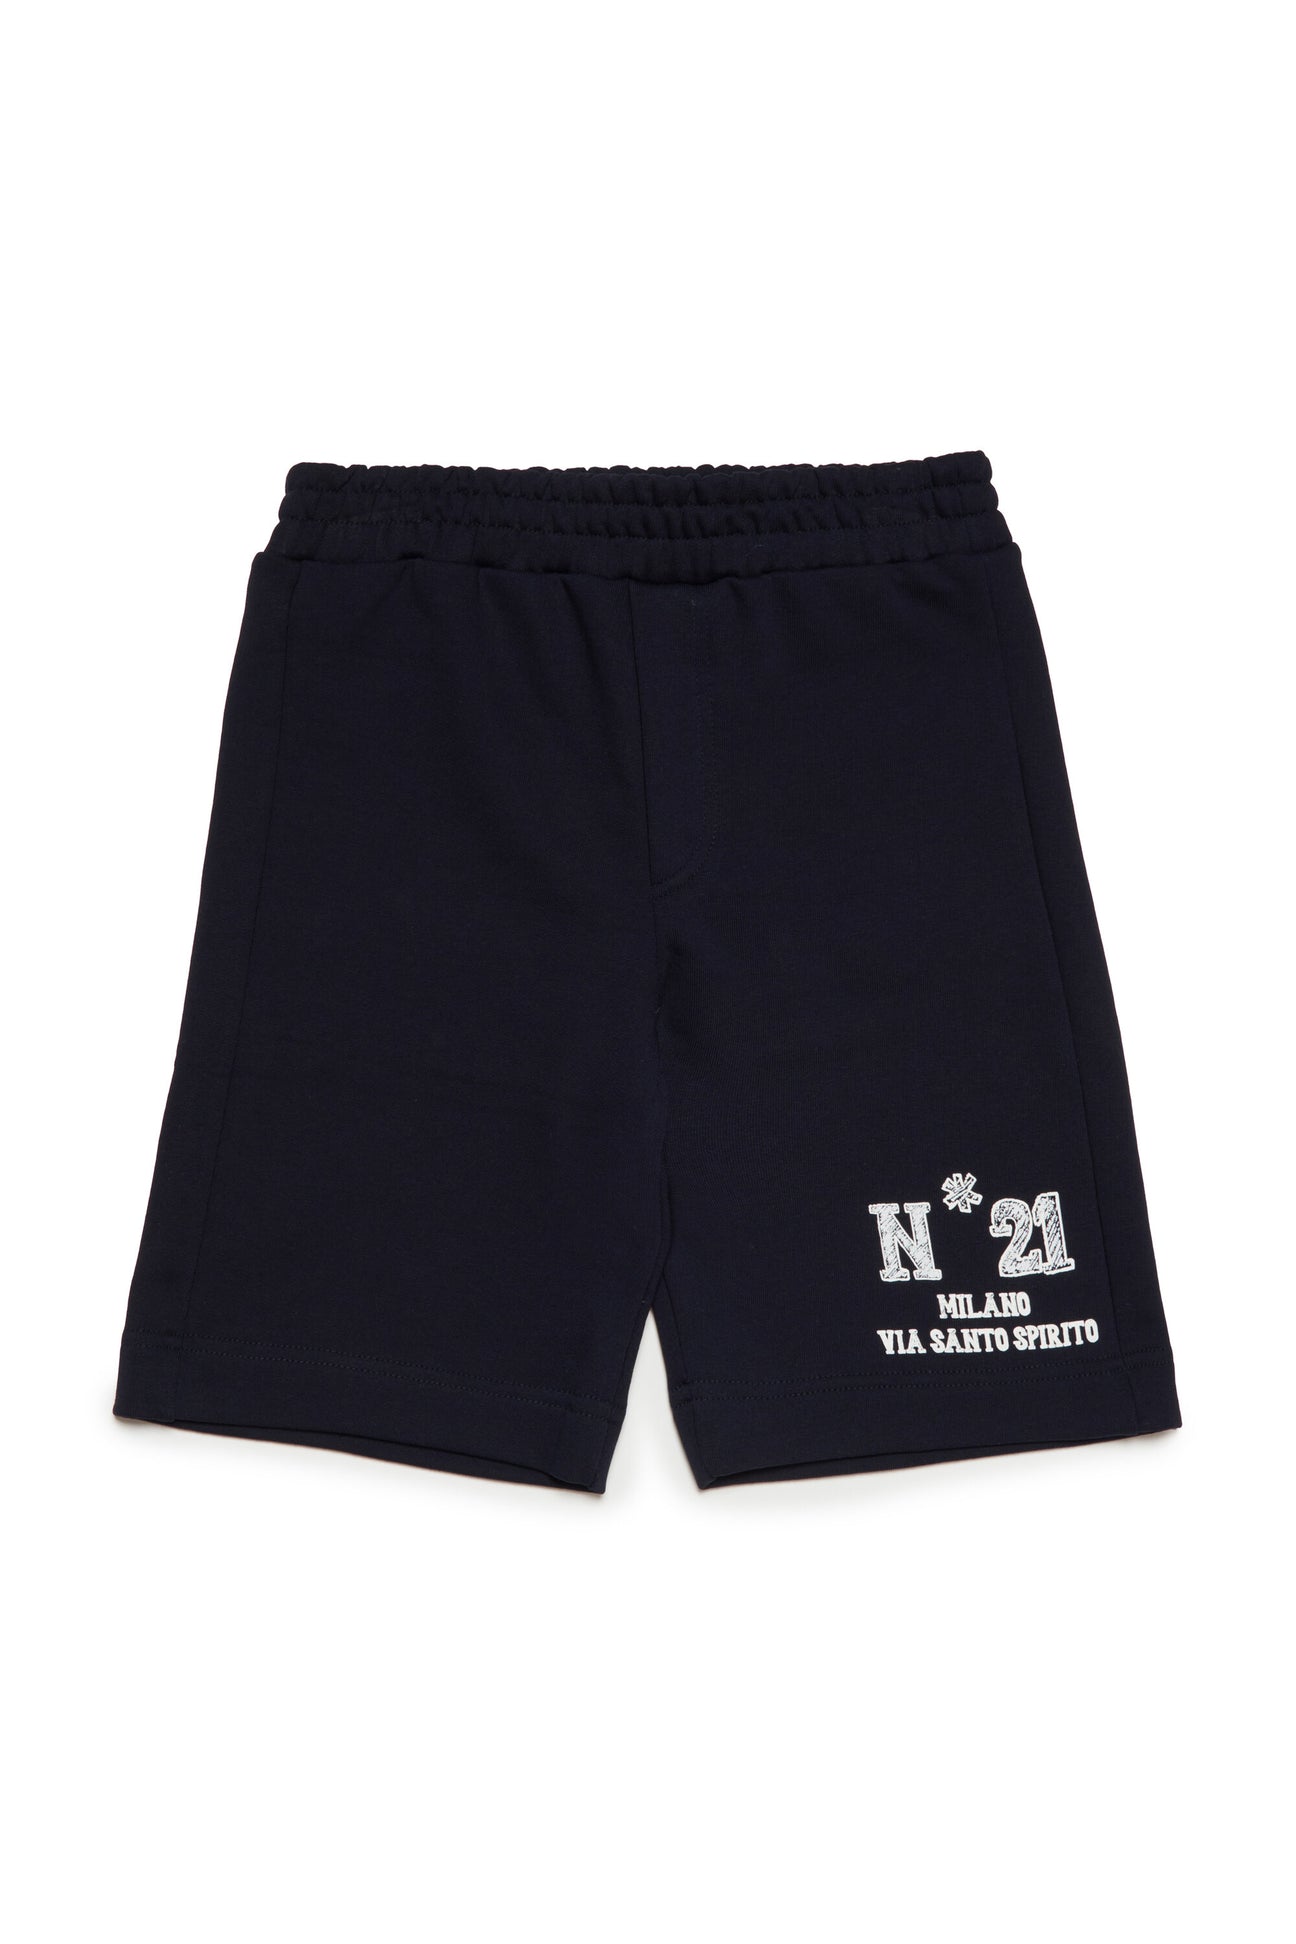 Fleece shorts with N°21 Milano logo Fleece shorts with N°21 Milano logo